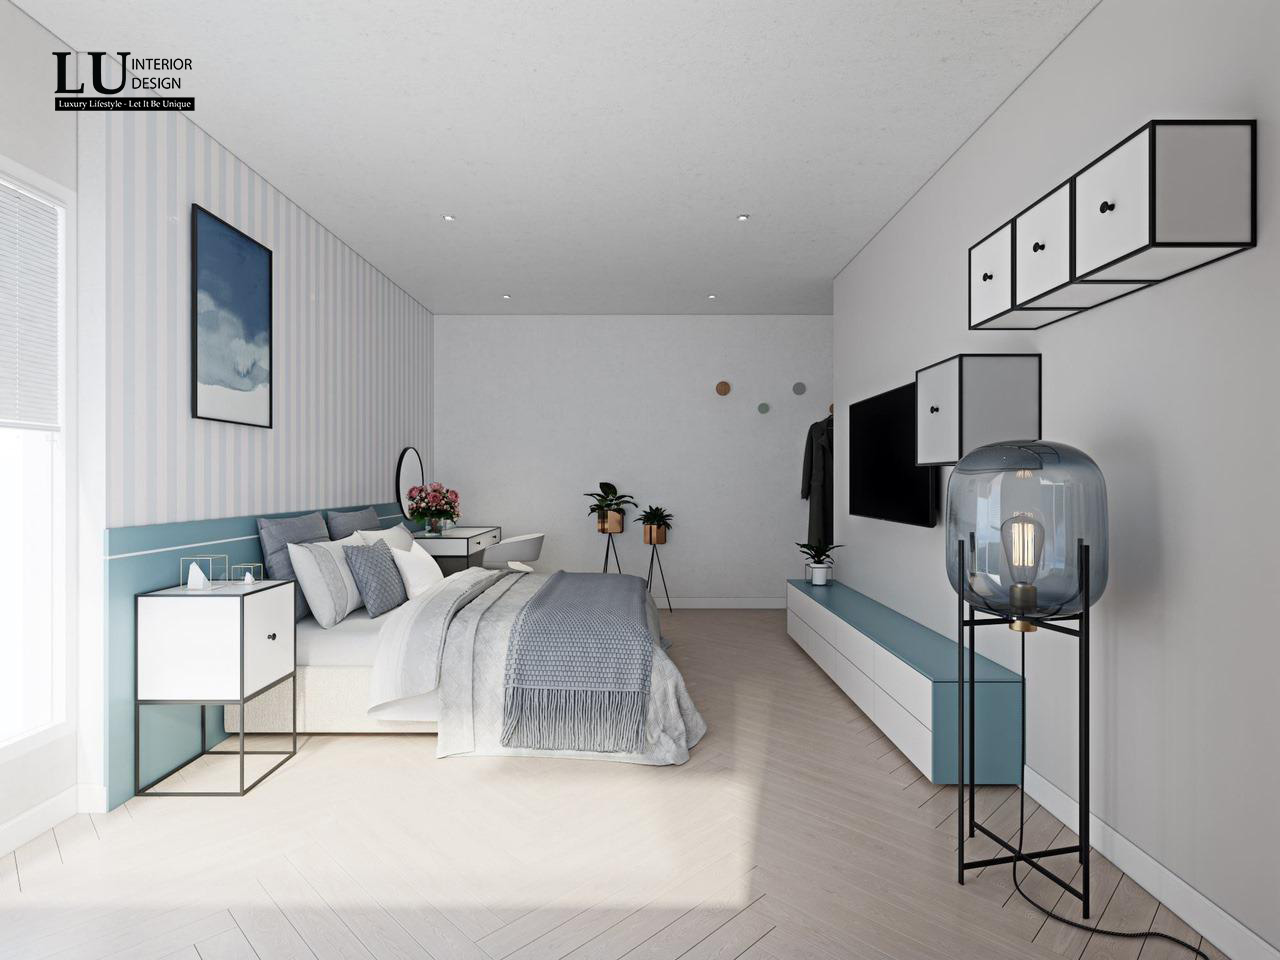 Nội thất phòng ngủ màu xanh lam hợp mệnh Thủy | LU Design thực hiện.